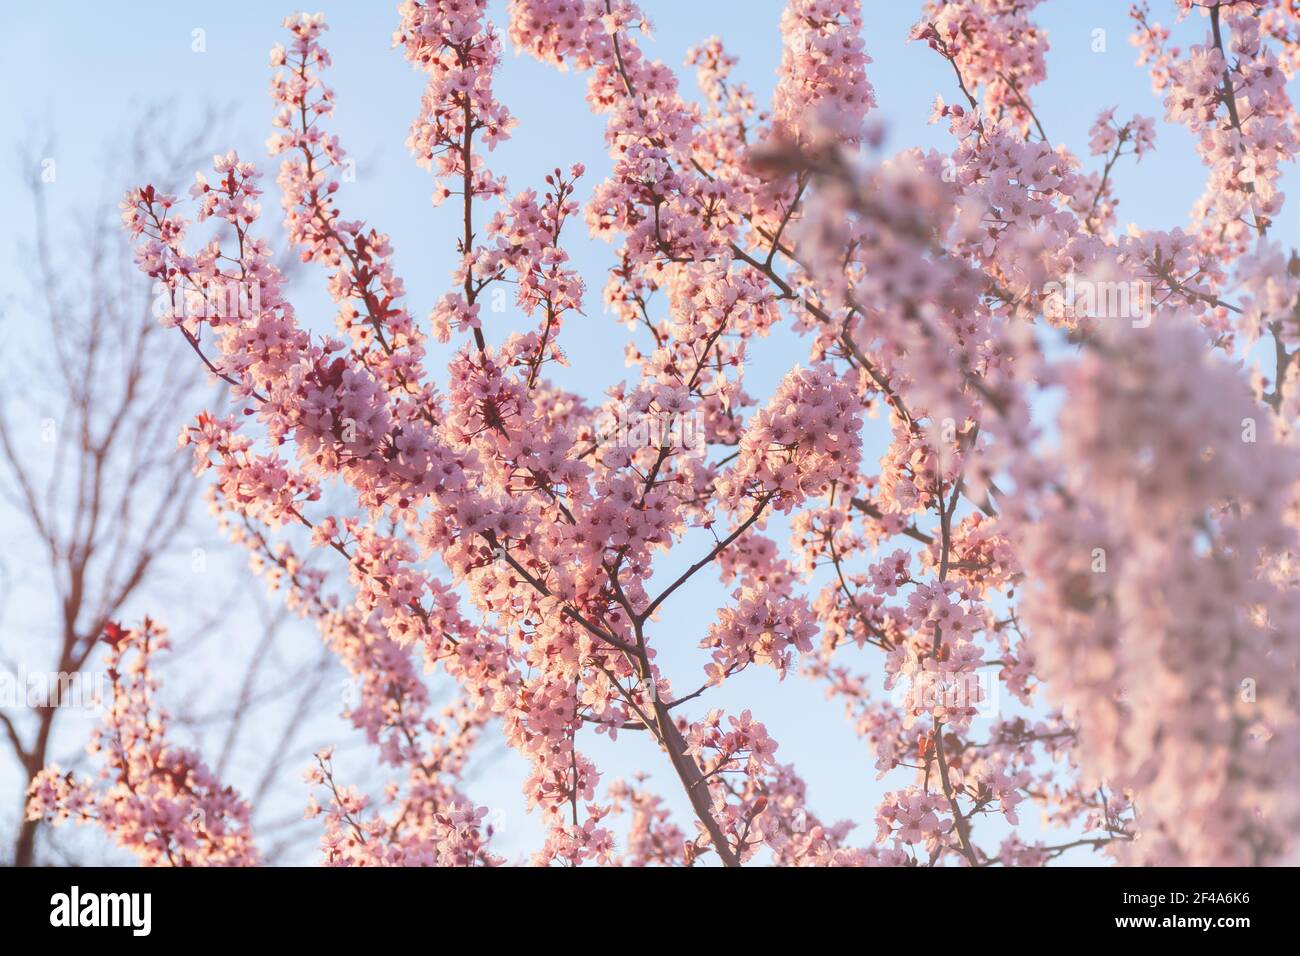 Schöne Frühling rosa Kirsche Pflaume Blüte Hintergrund. Abstraktes pastelliges zartes Banner. Ein verträumtes romantisches Bild des Frühlings. Hellblau und hellrosa sh Stockfoto